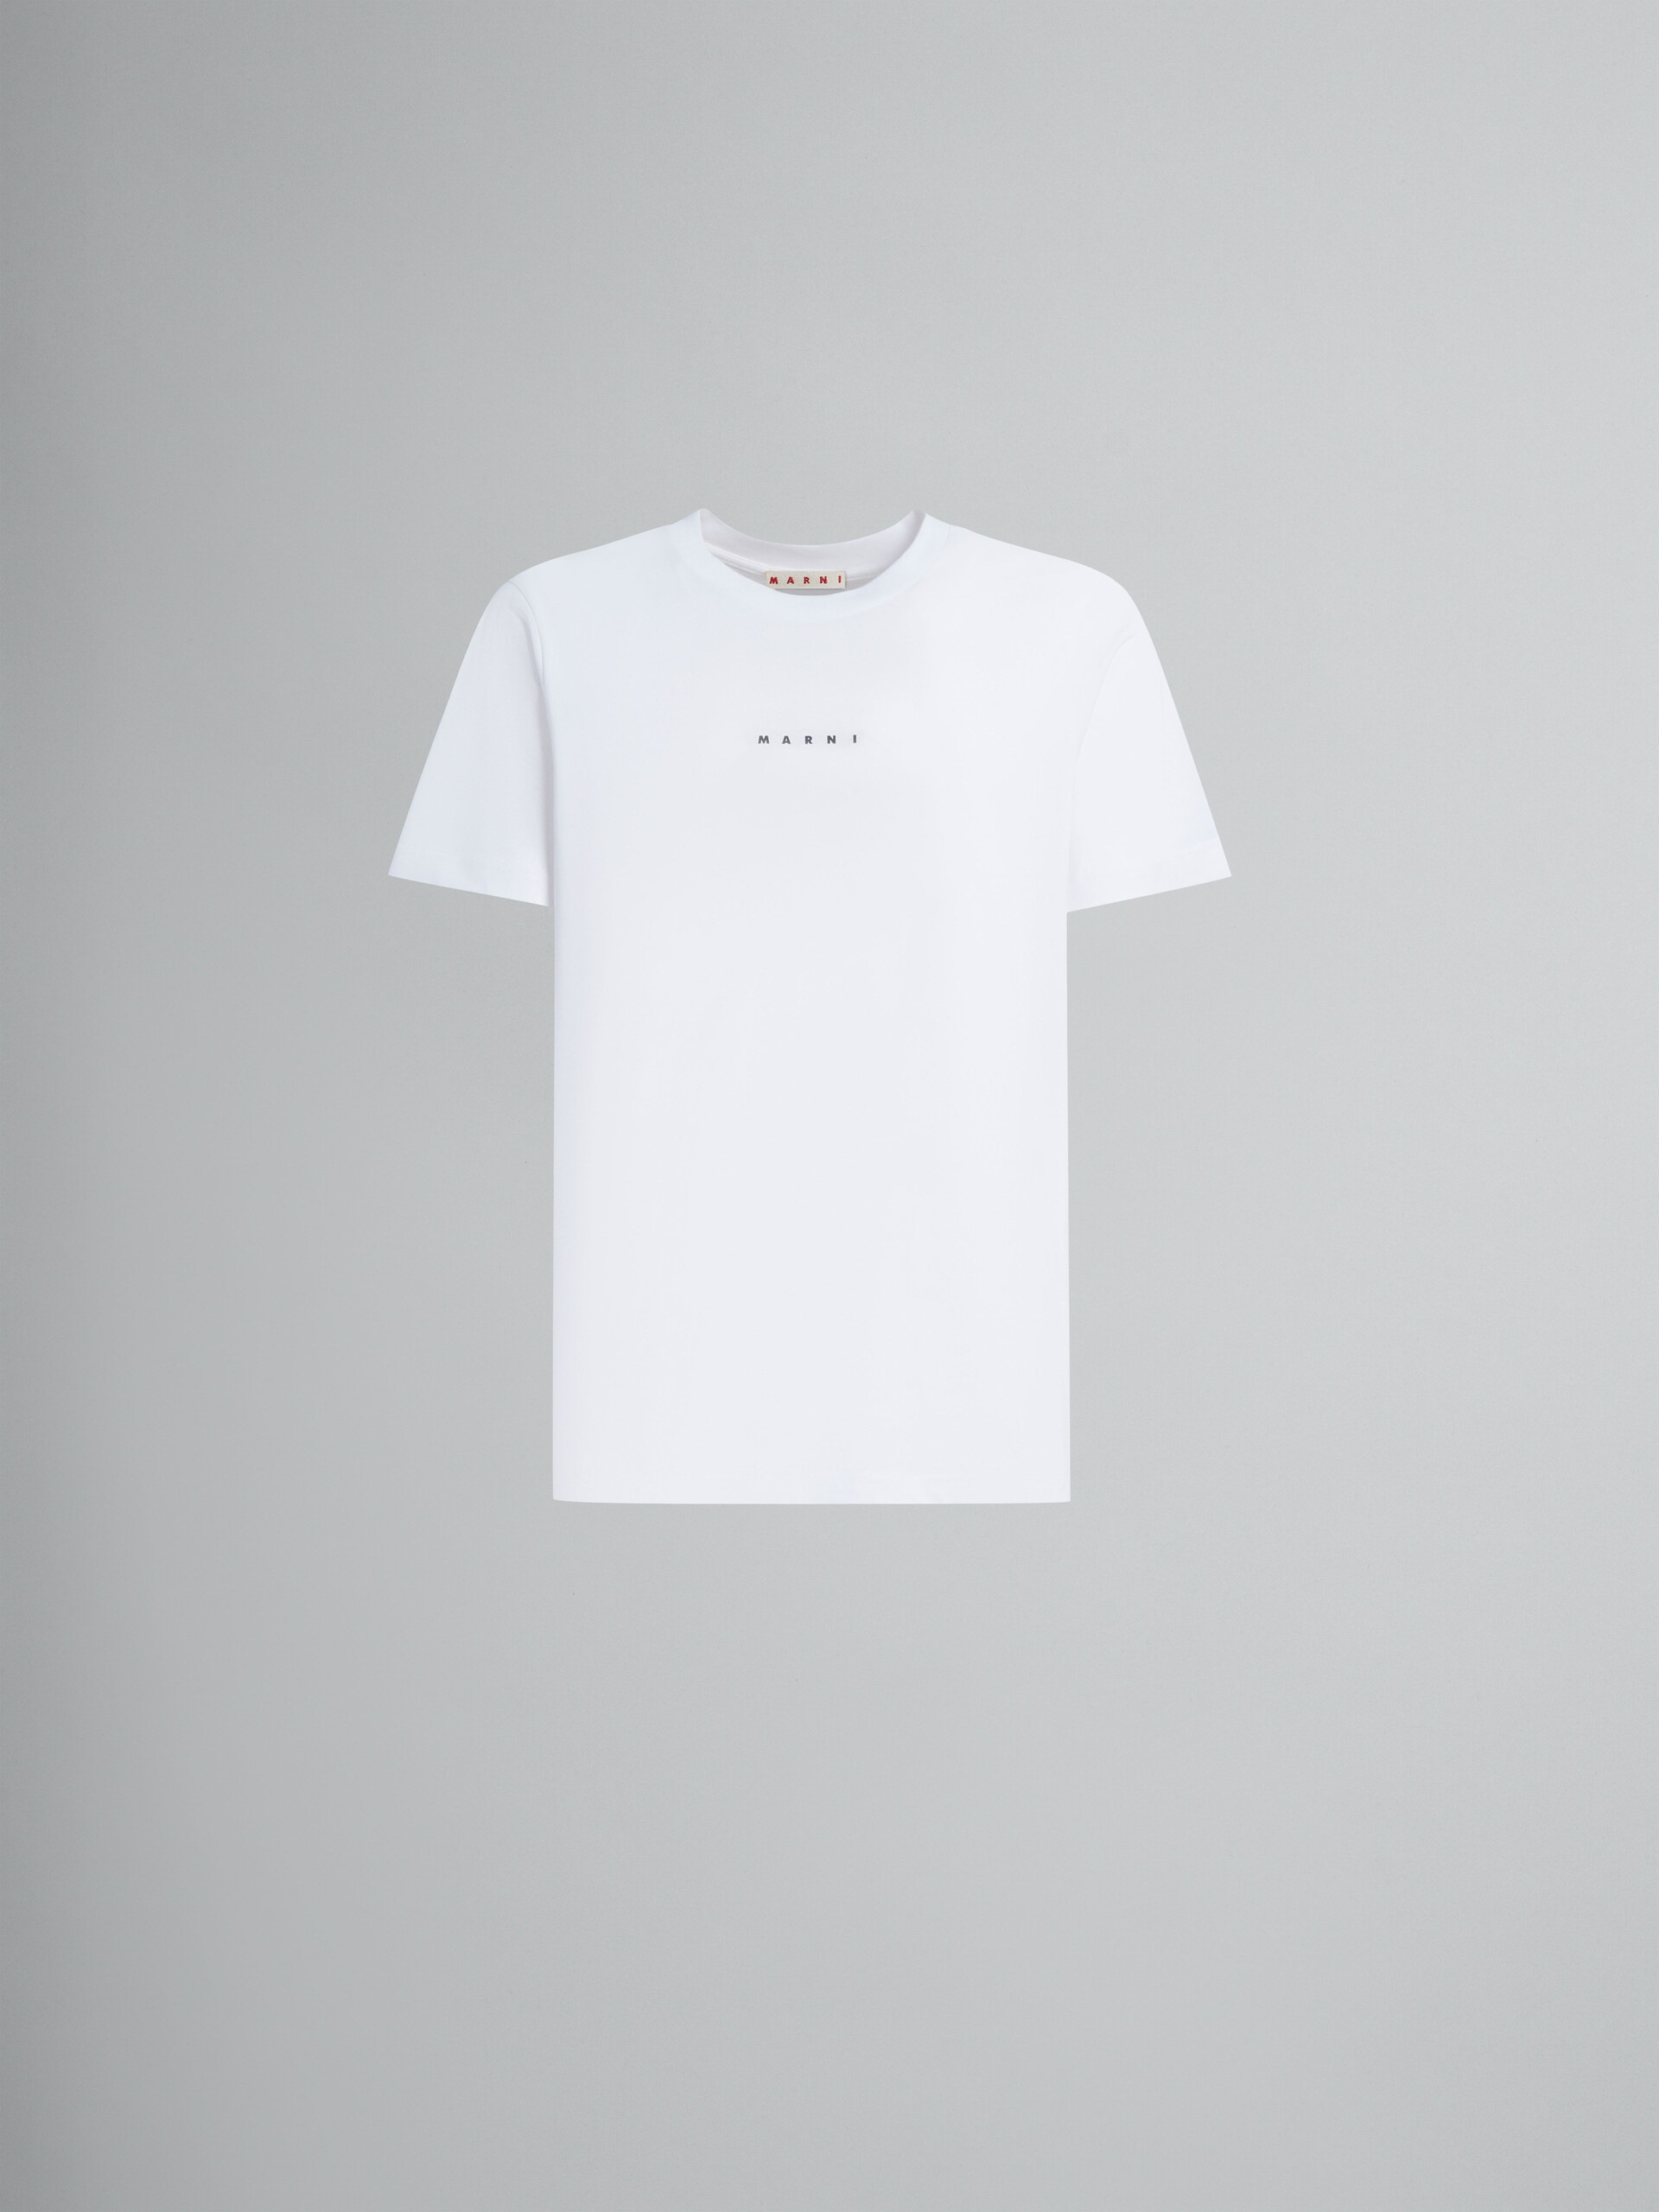 ホワイト ロゴ入りオーガニックコットン製Tシャツ | Marni